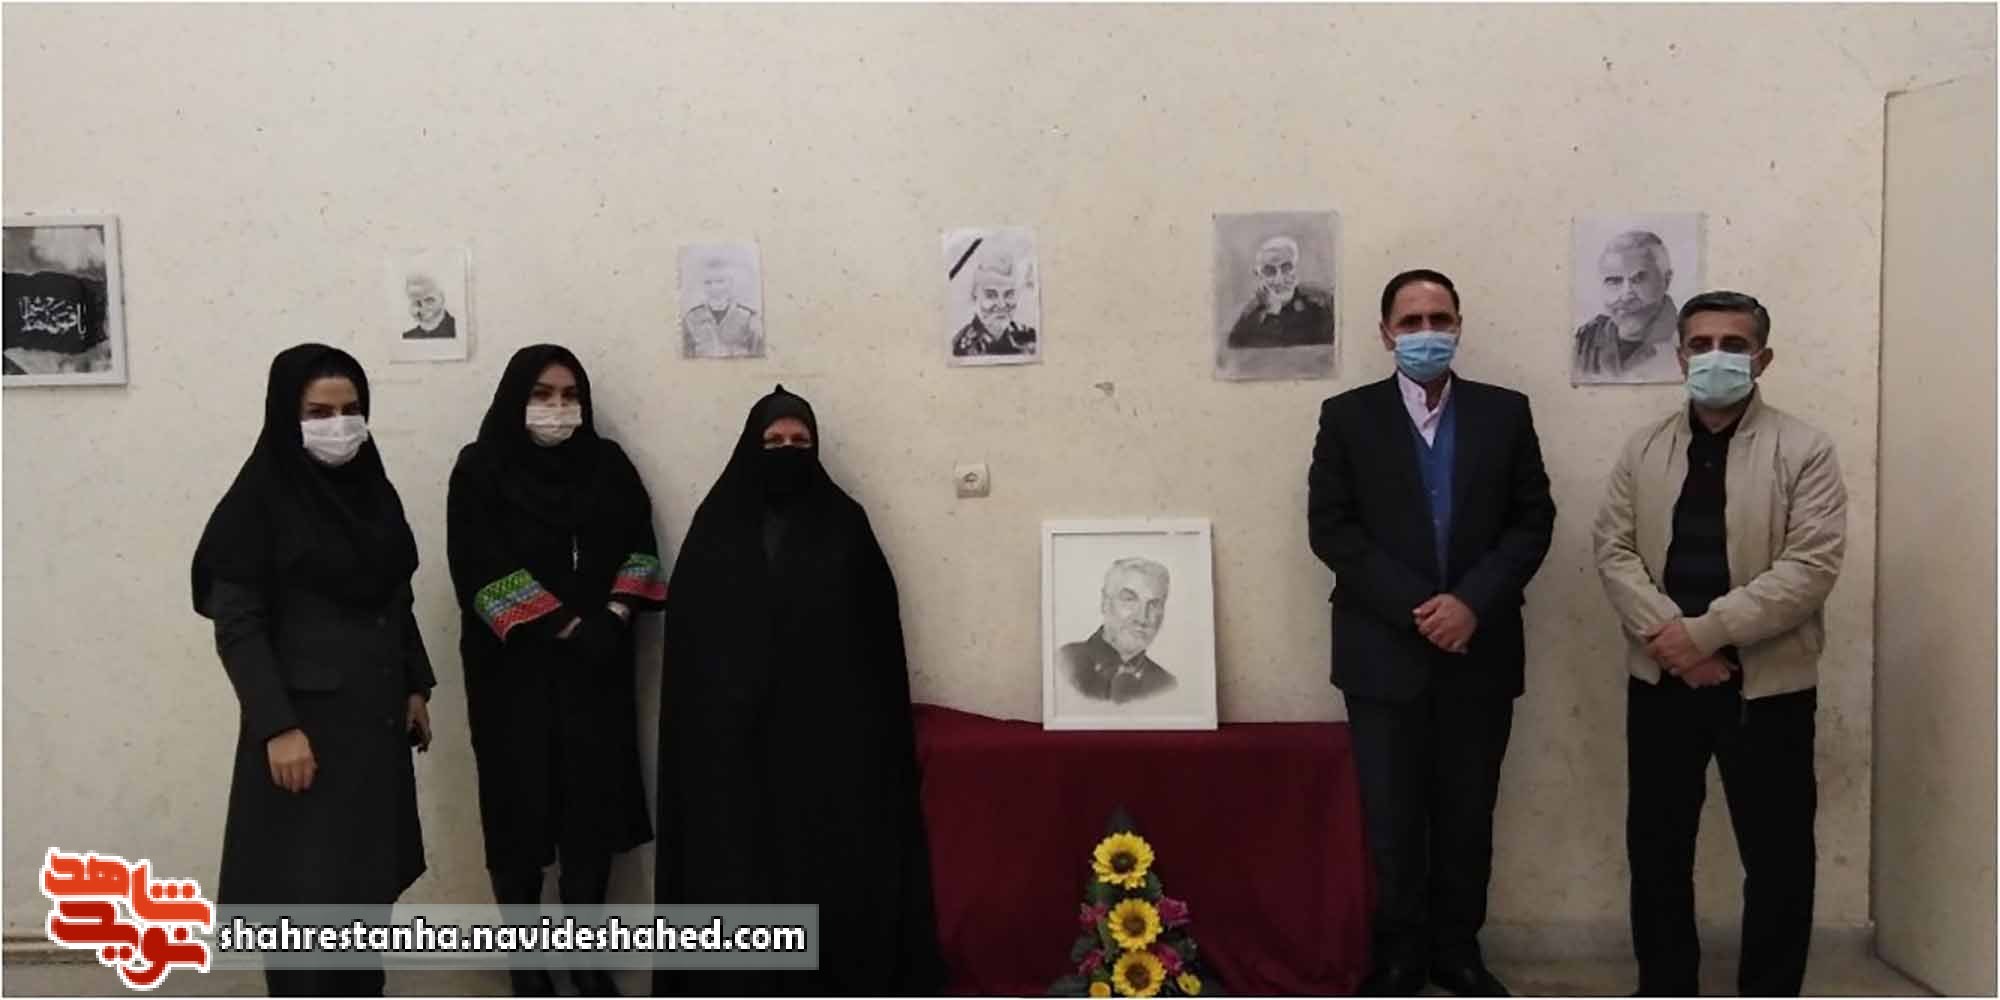 افتتاح نمایشگاه طراحی و نقاشی به مناسبت یکمین سالگرد شهادت سردار دلها در شهرستان قرچک